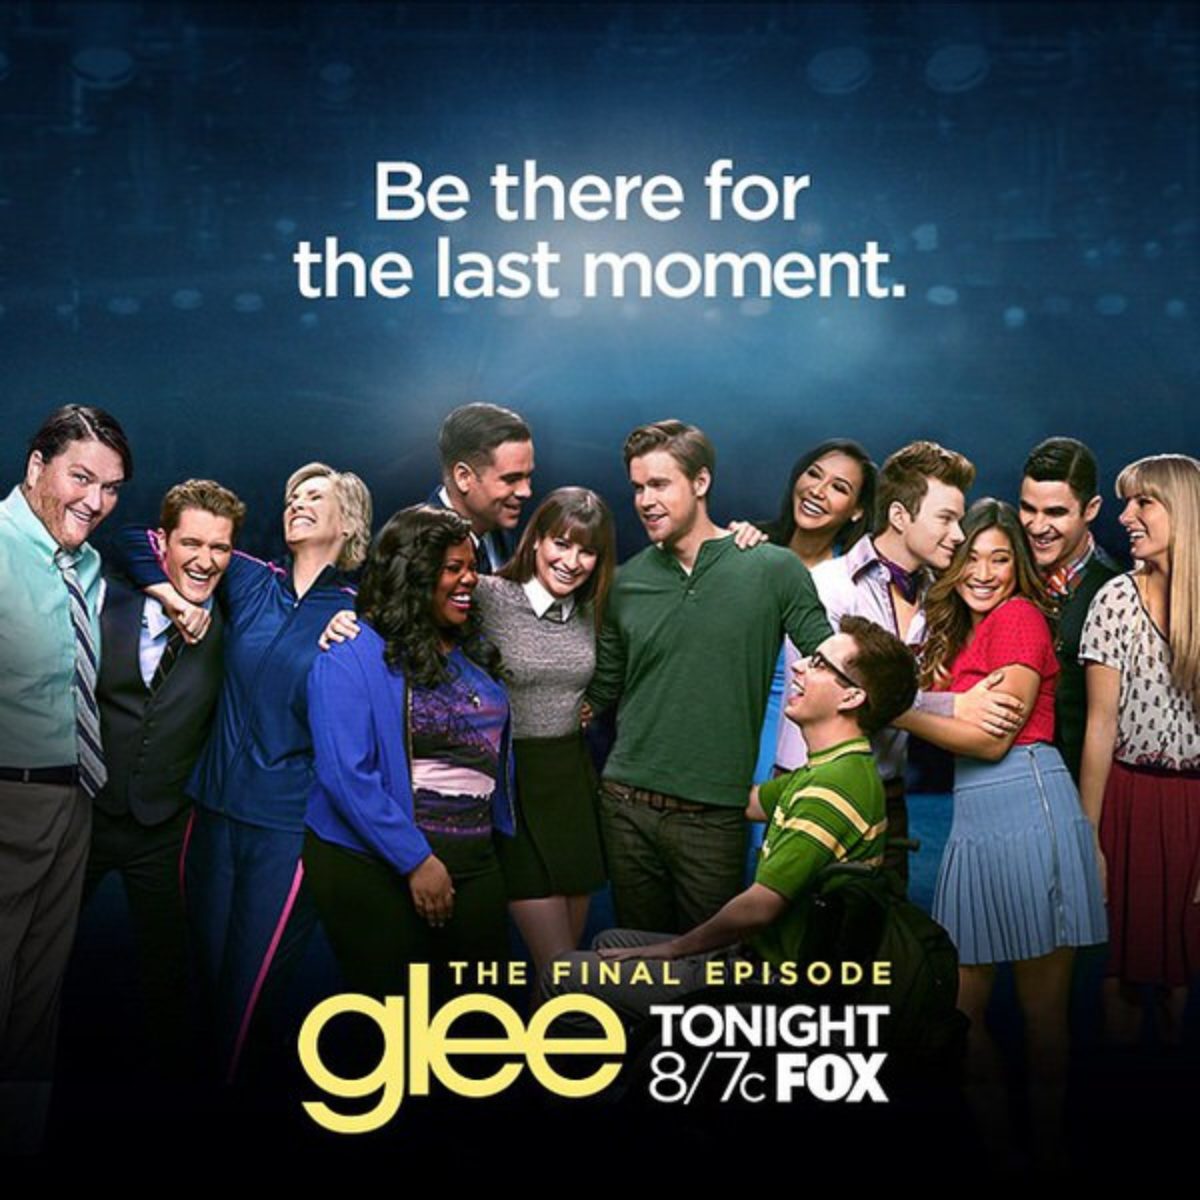 ネタバレ後半 グリー シーズン6 ファイナル Glee Season 6 エピソード9以降はこっちで 12ページ目 12ページ中 きらきらペリー